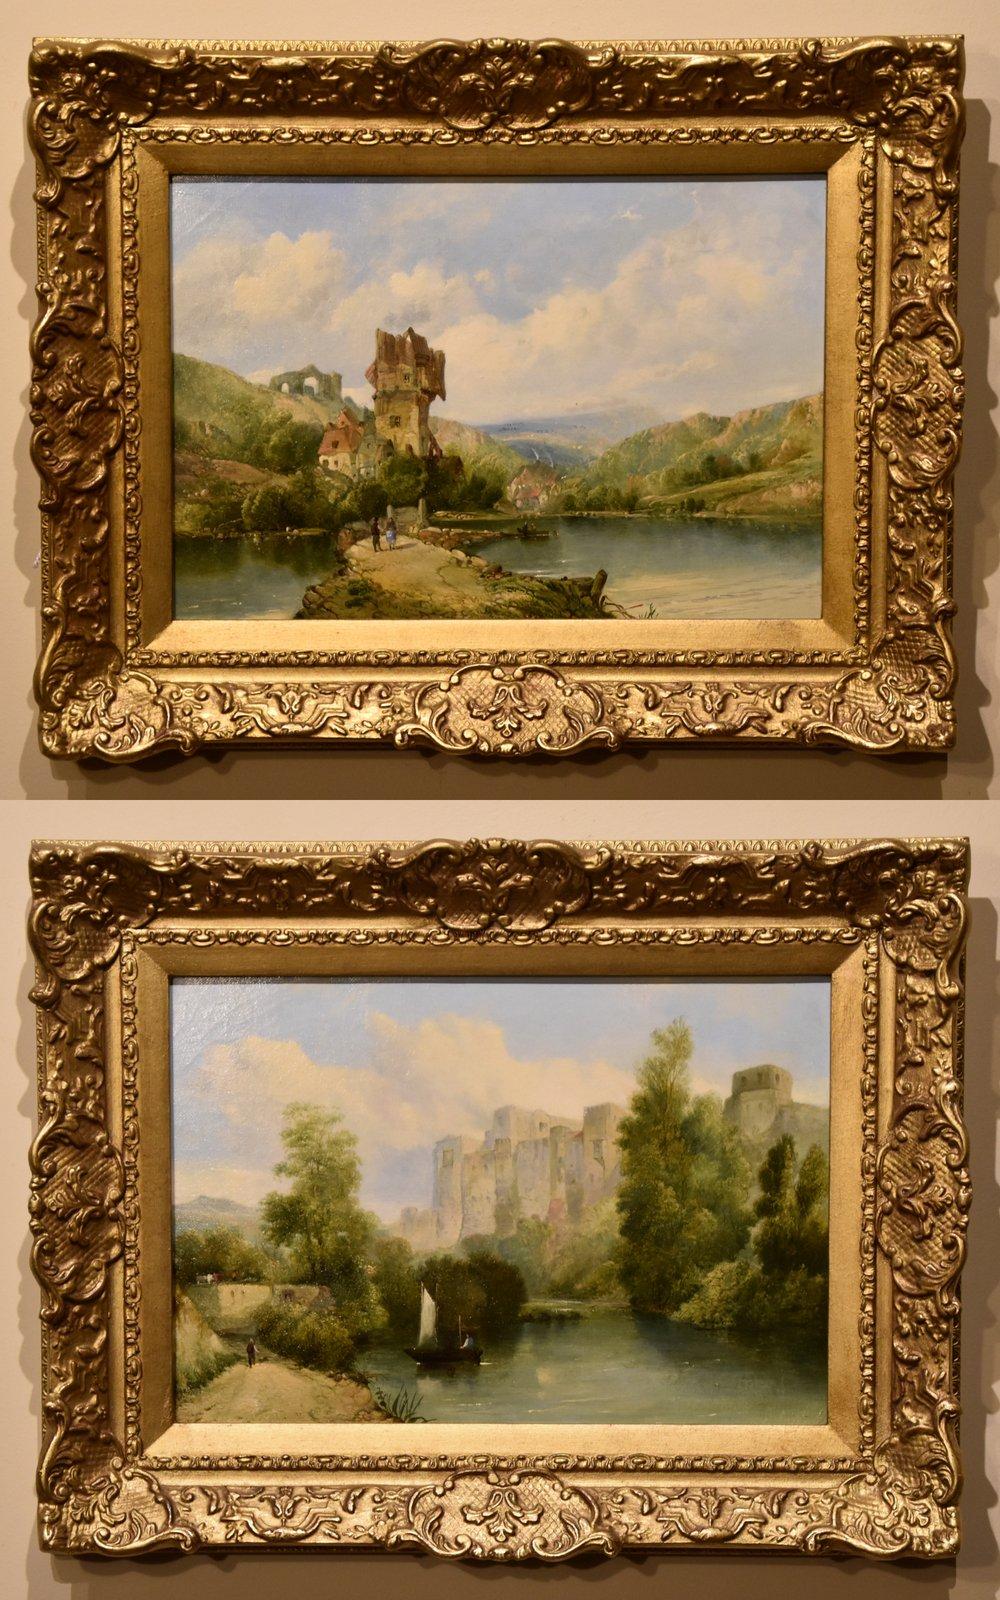 "Continental River Views" Paar von Alfred Henry Vickers 1836-1919. Er war ein beliebter Maler rustikaler Landschaften und kontinentaler Flussszenen. Der Enkel von Alfred Vickers senior. Beide Öl auf Leinwand. Einer hat unterschrieben.

Abmessungen